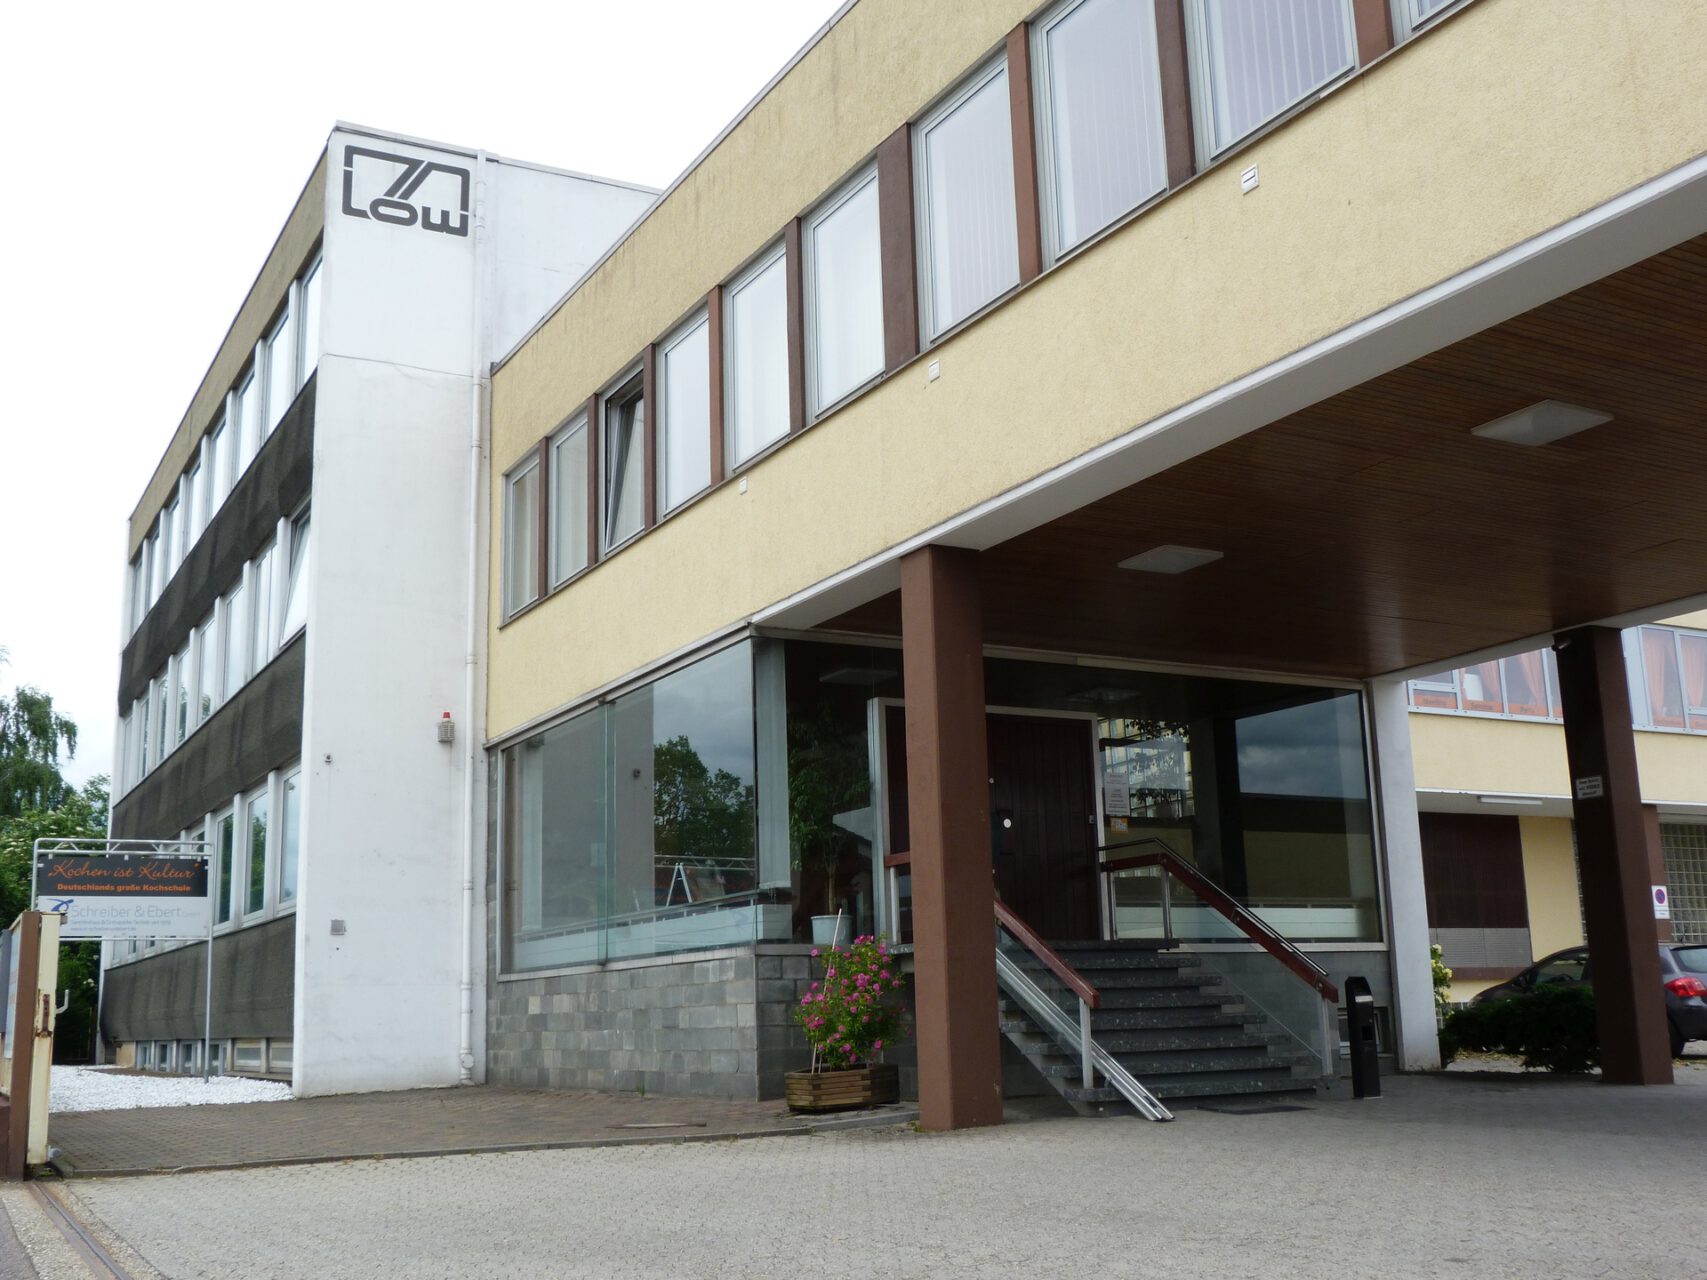 Gebäude der Firma Löw, Schmalkaldener Straße, Frankfurt am Main Unterliederbach